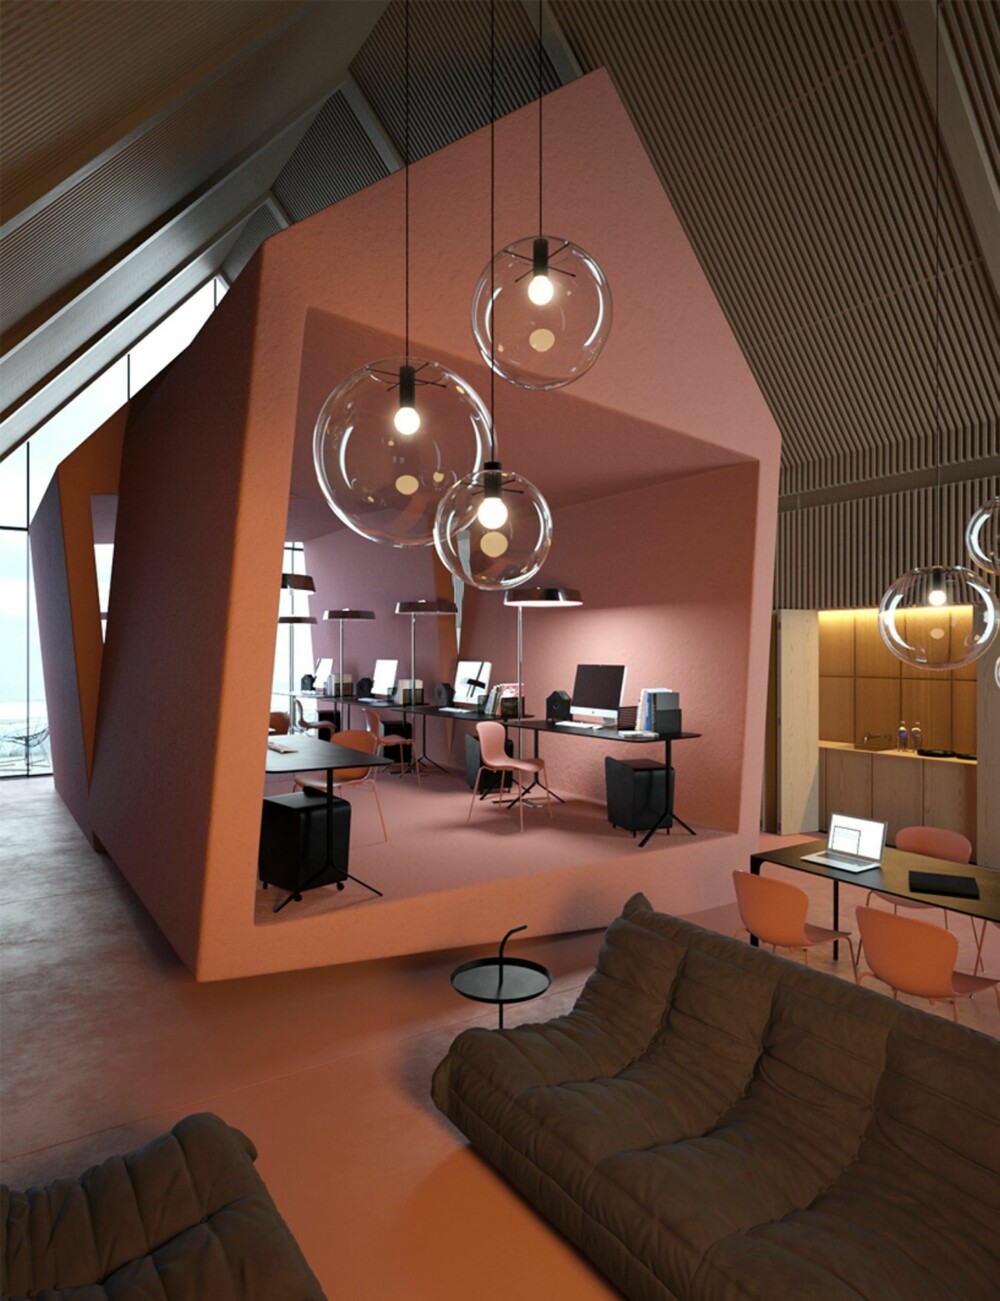 ROM I ROMMET: Arkitektene har valgt en annerledes inndeling av rommet for å skape et artig arbeidsmiljø.